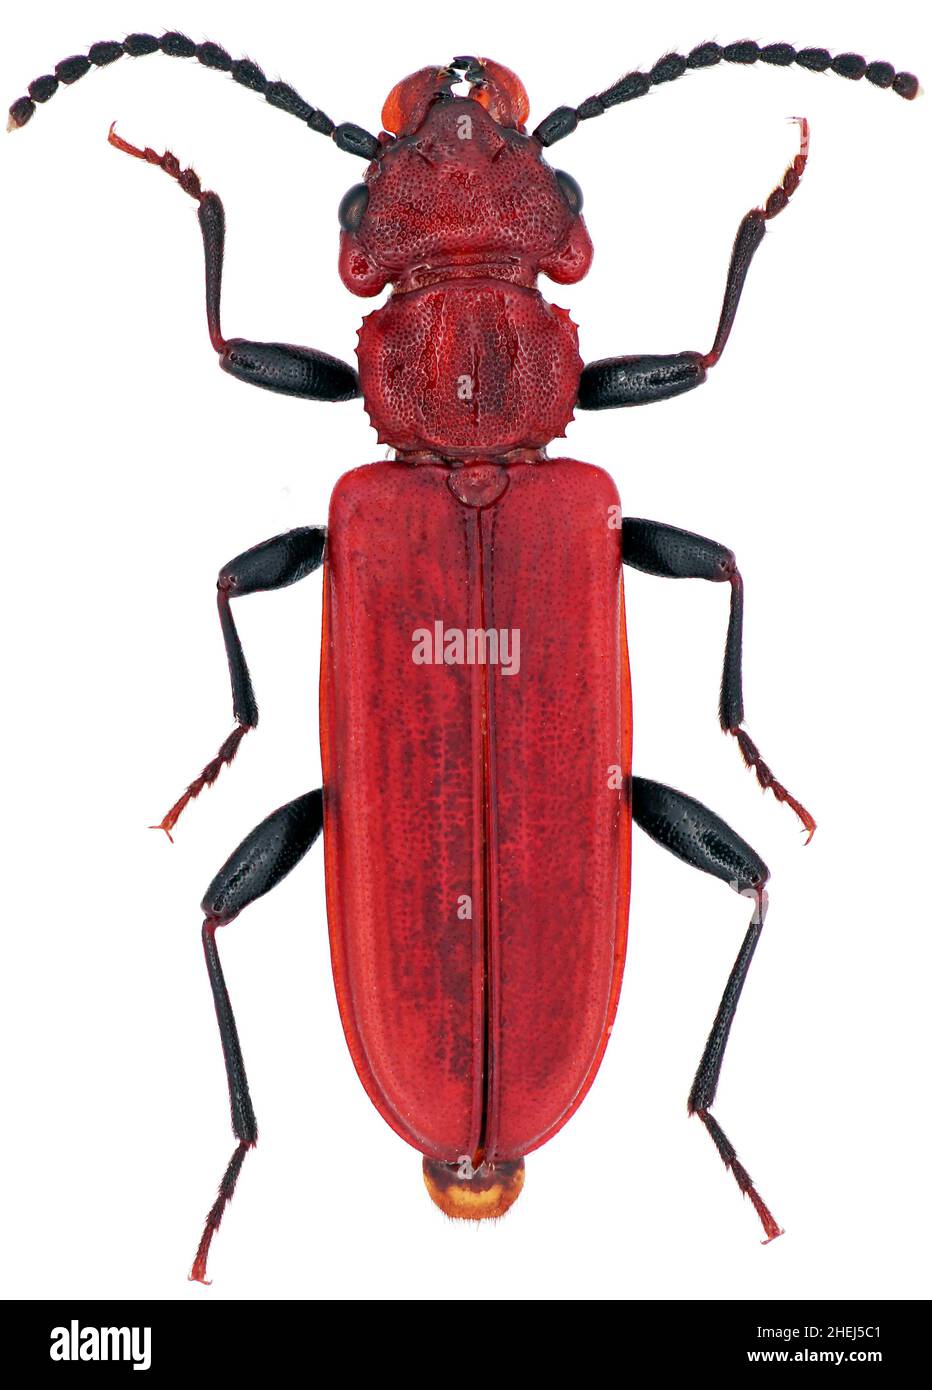 Cucujus haematodes est une espèce de coléoptères de la famille des Cucujidae menacées en Europe Banque D'Images